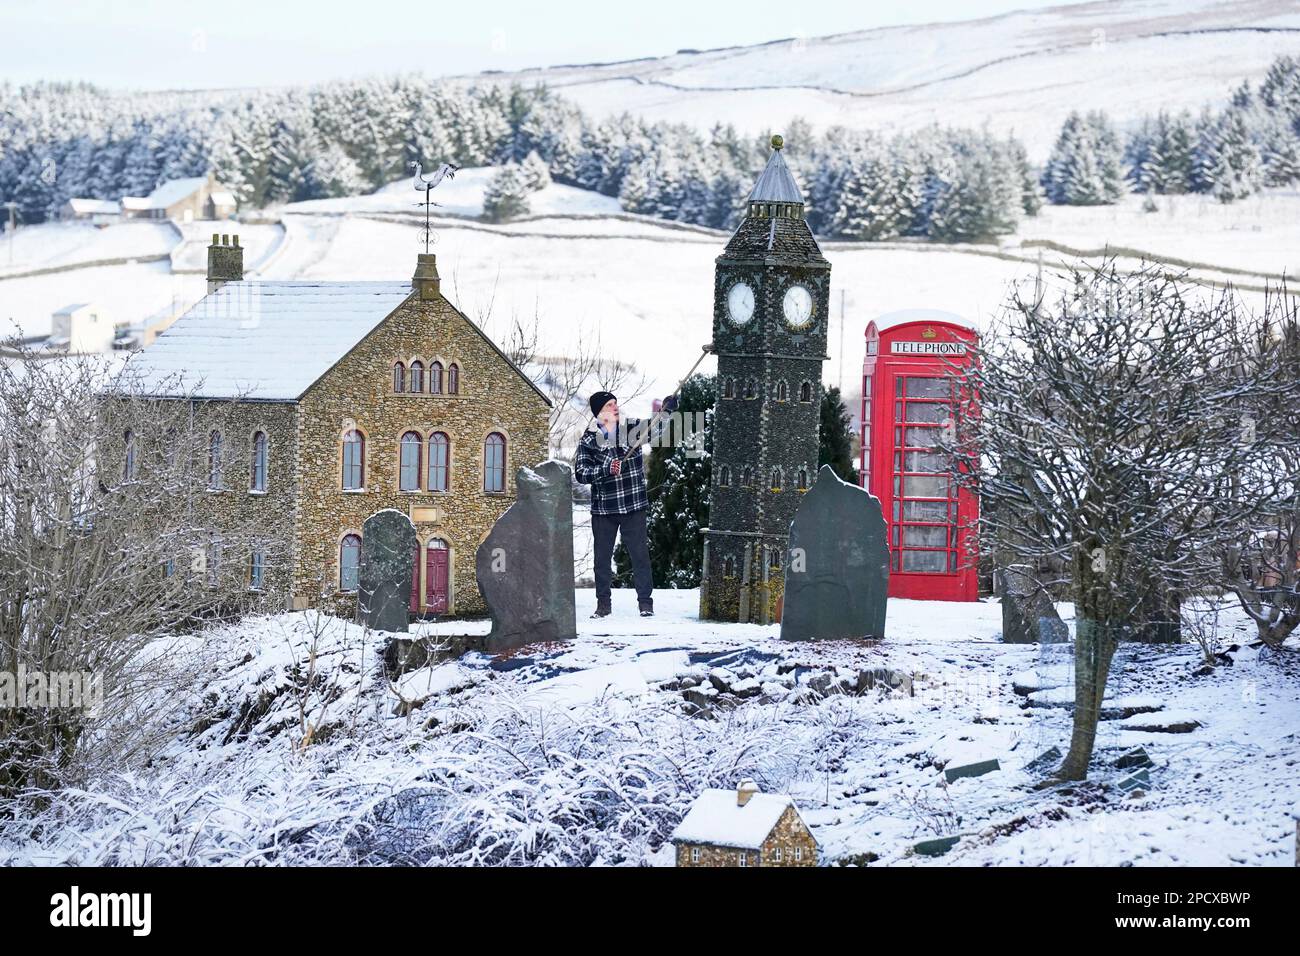 Lawson Robinson, de 77 años, limpia la nieve de su aldea modelo que construyó en su jardín para recaudar dinero para caridad, en Nenthead, en Cumbria. Fecha de la fotografía: Martes 14 de marzo de 2023. Foto de stock